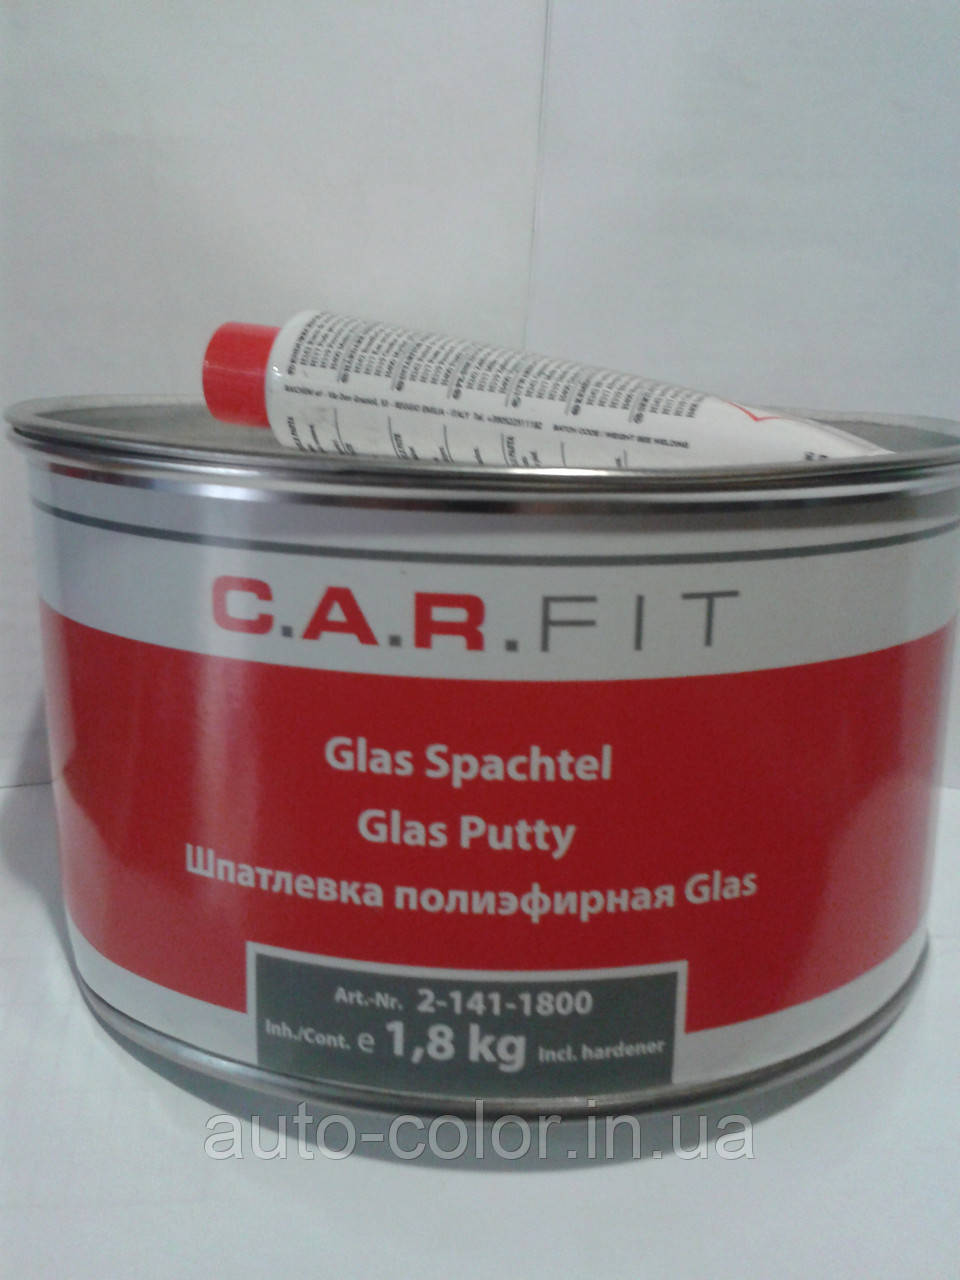 C.A.R.FIT. Шпаклівка поліефірна зі скловолокном із затверджувачем 1,8 кг